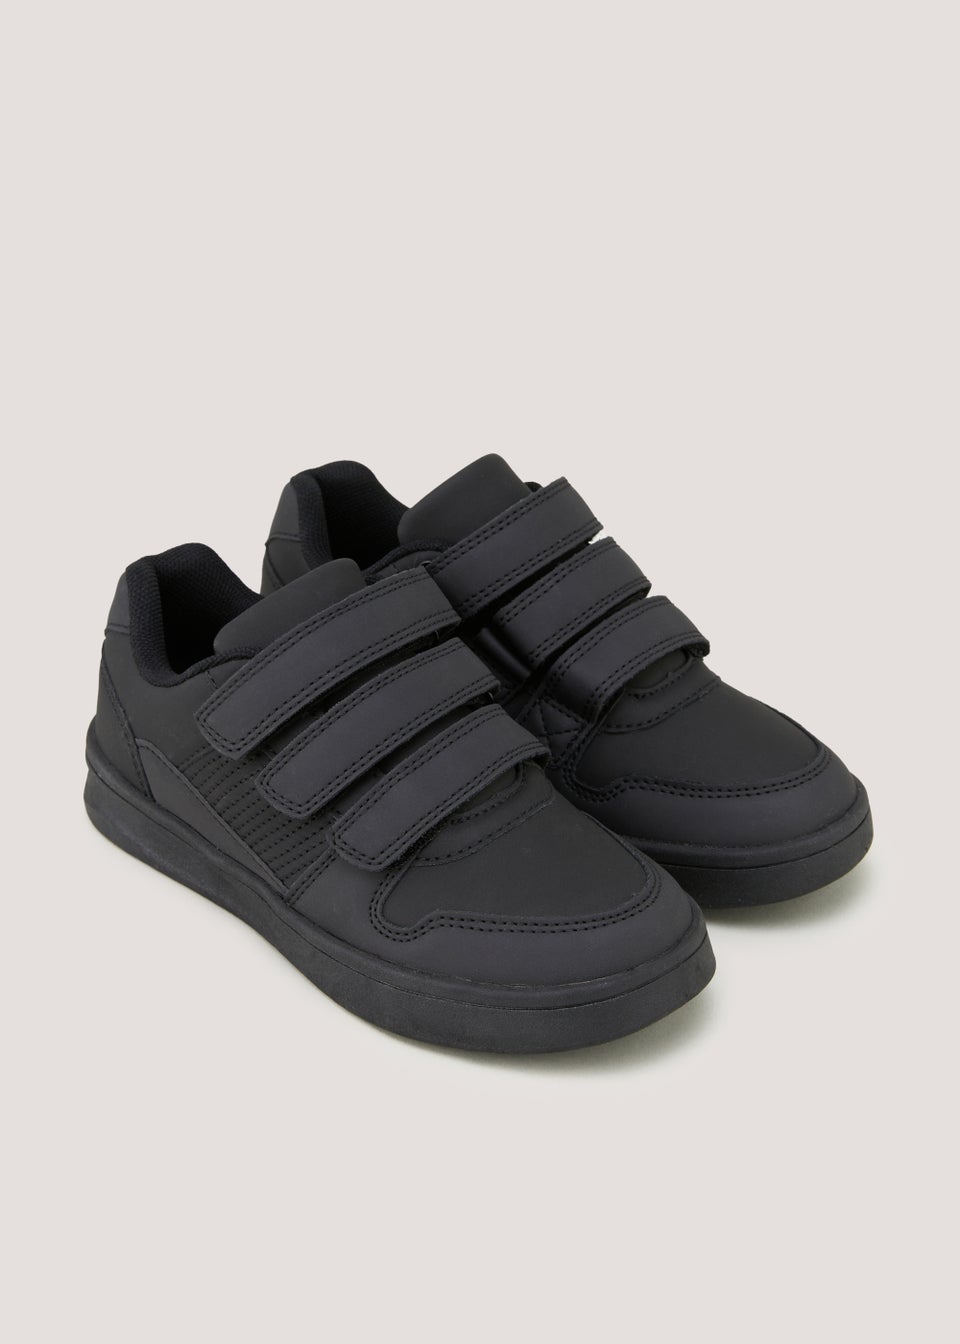 Черные школьные туфли с тройным ремешком для мальчиков (от 10 до 6 лет) черные лакированные массивные школьные туфли для девочек до 10 лет – от 5 лет